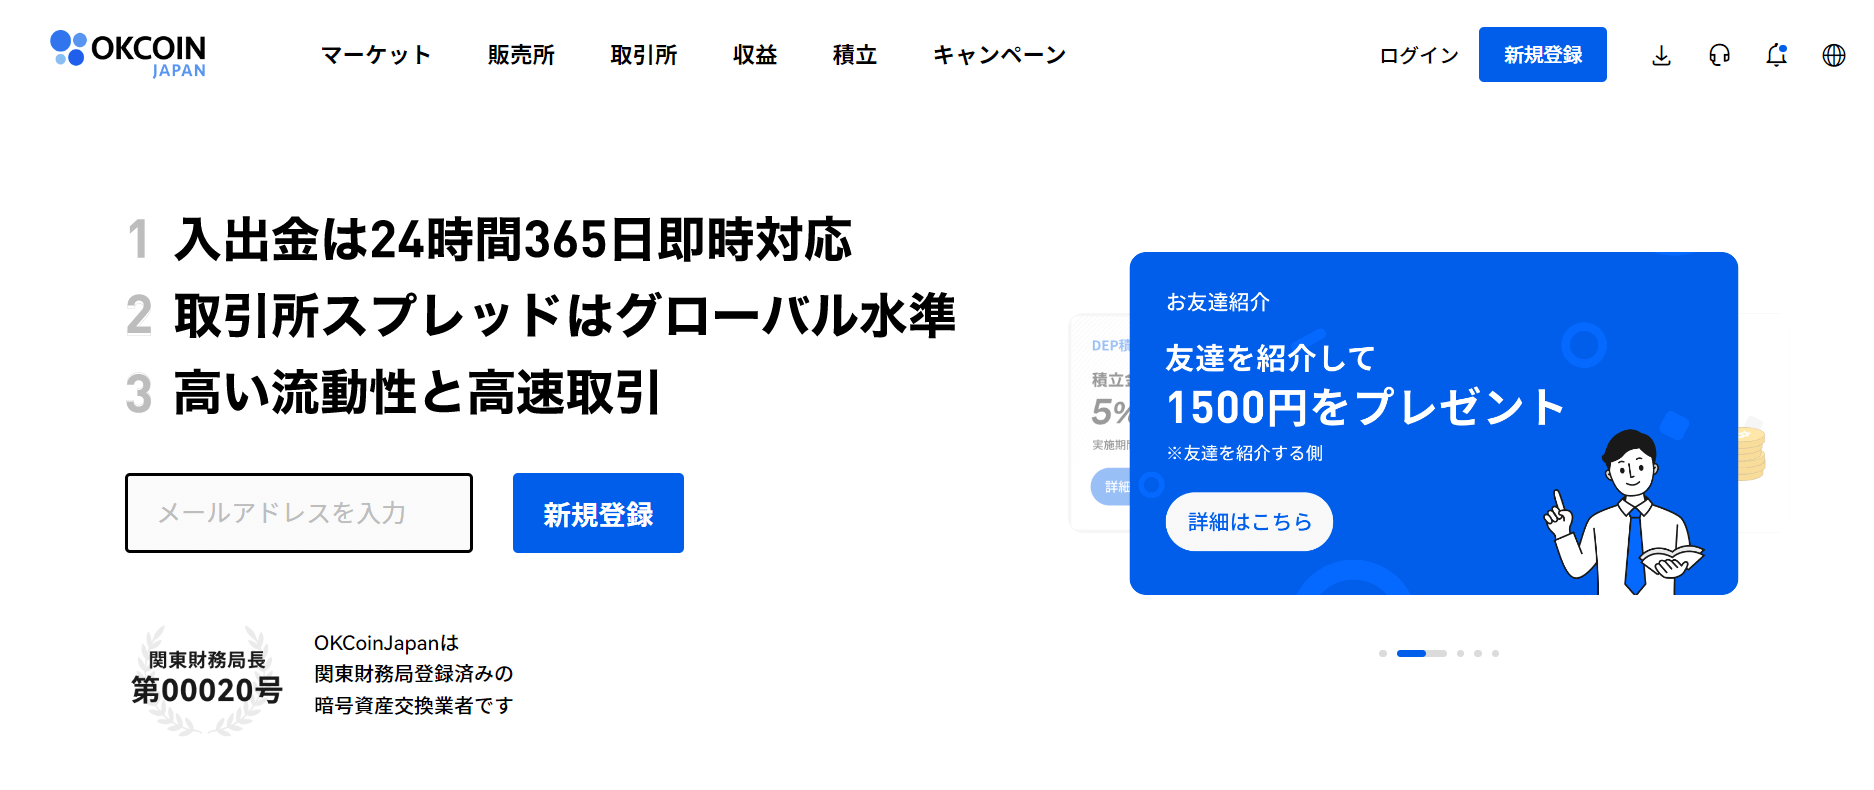 OKCoinJapanのサイトトップ画像